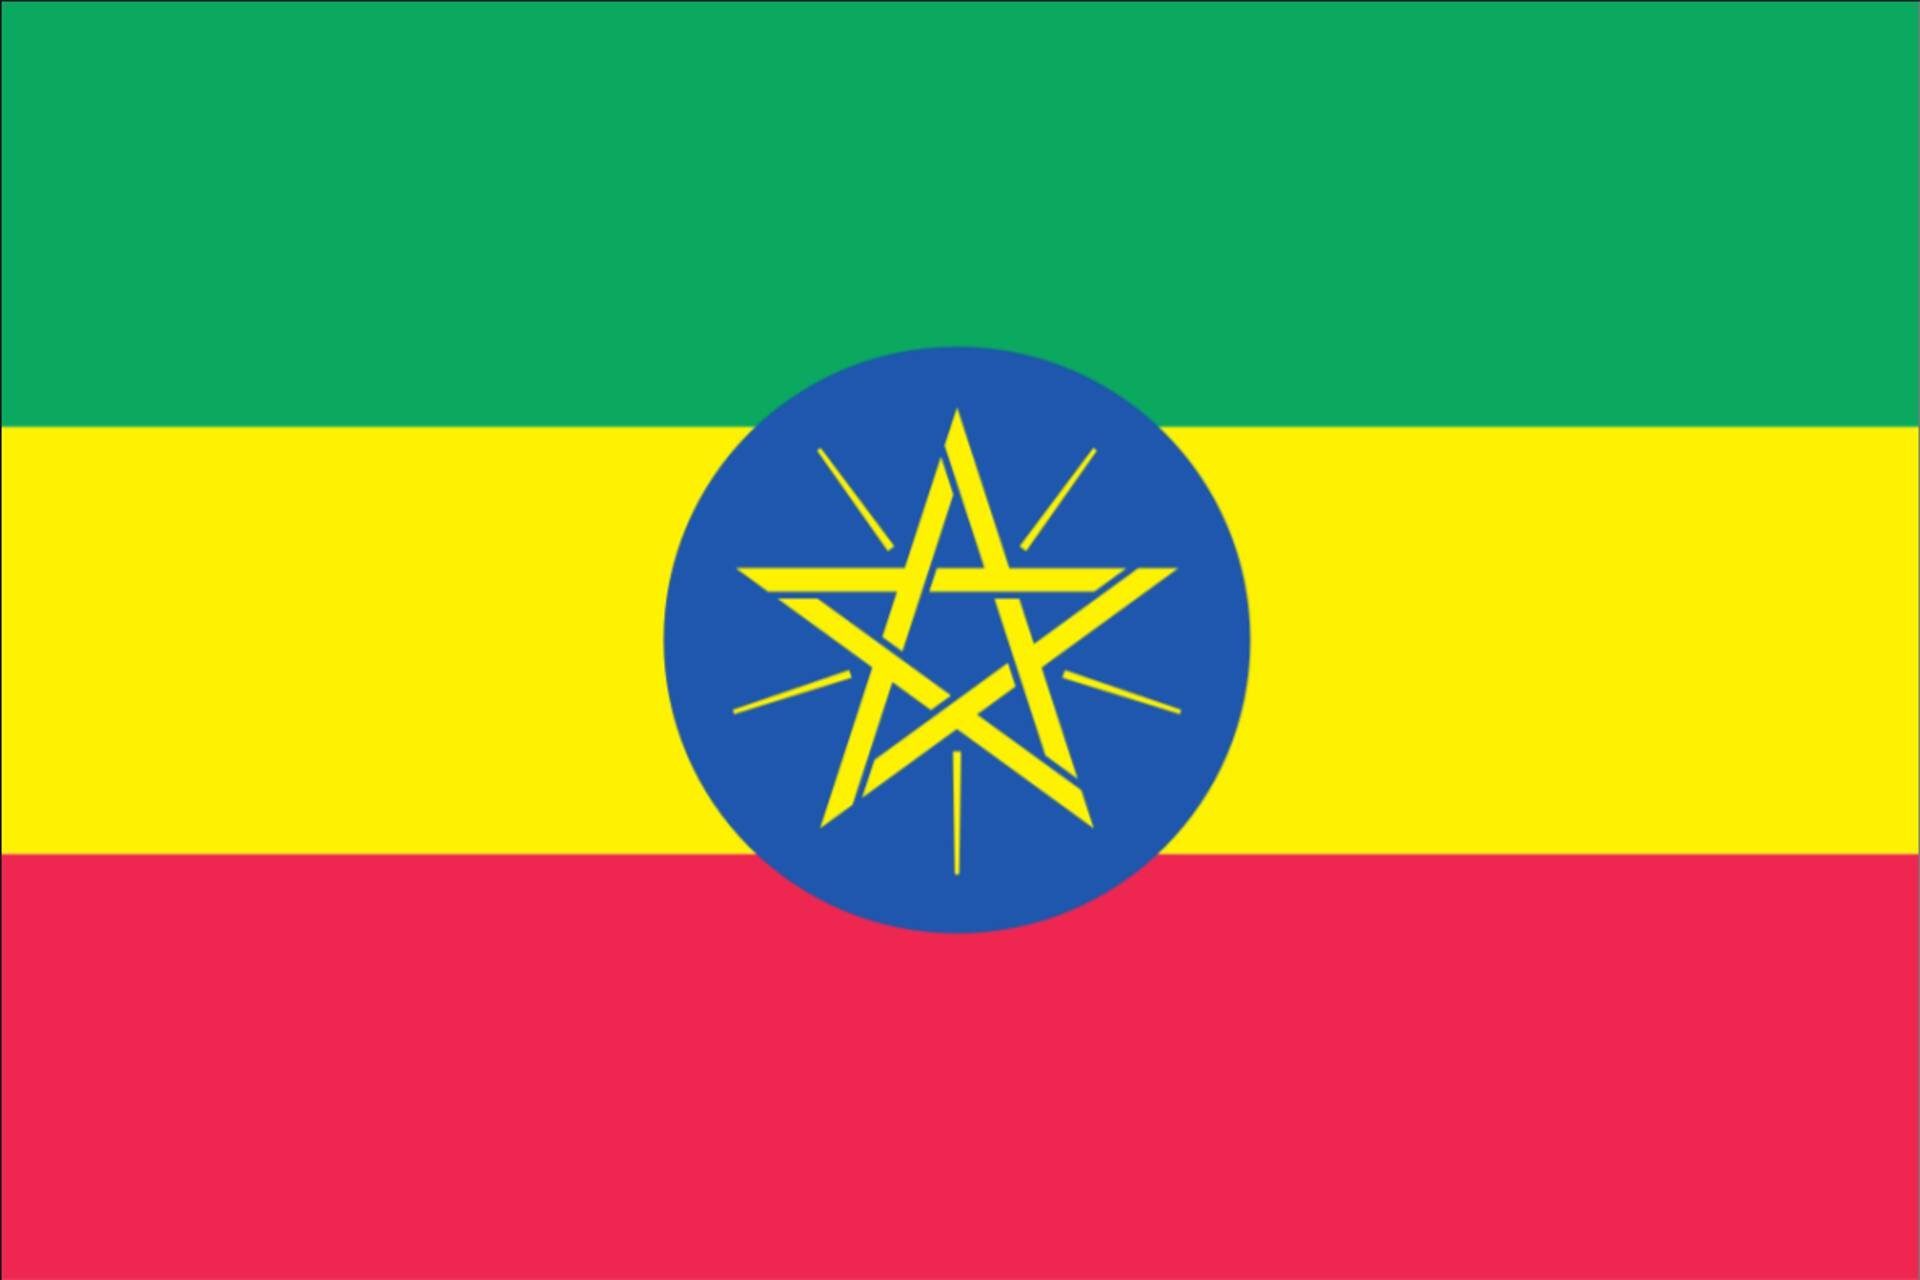 flaggenmeer Flagge Äthiopien 80 g/m²